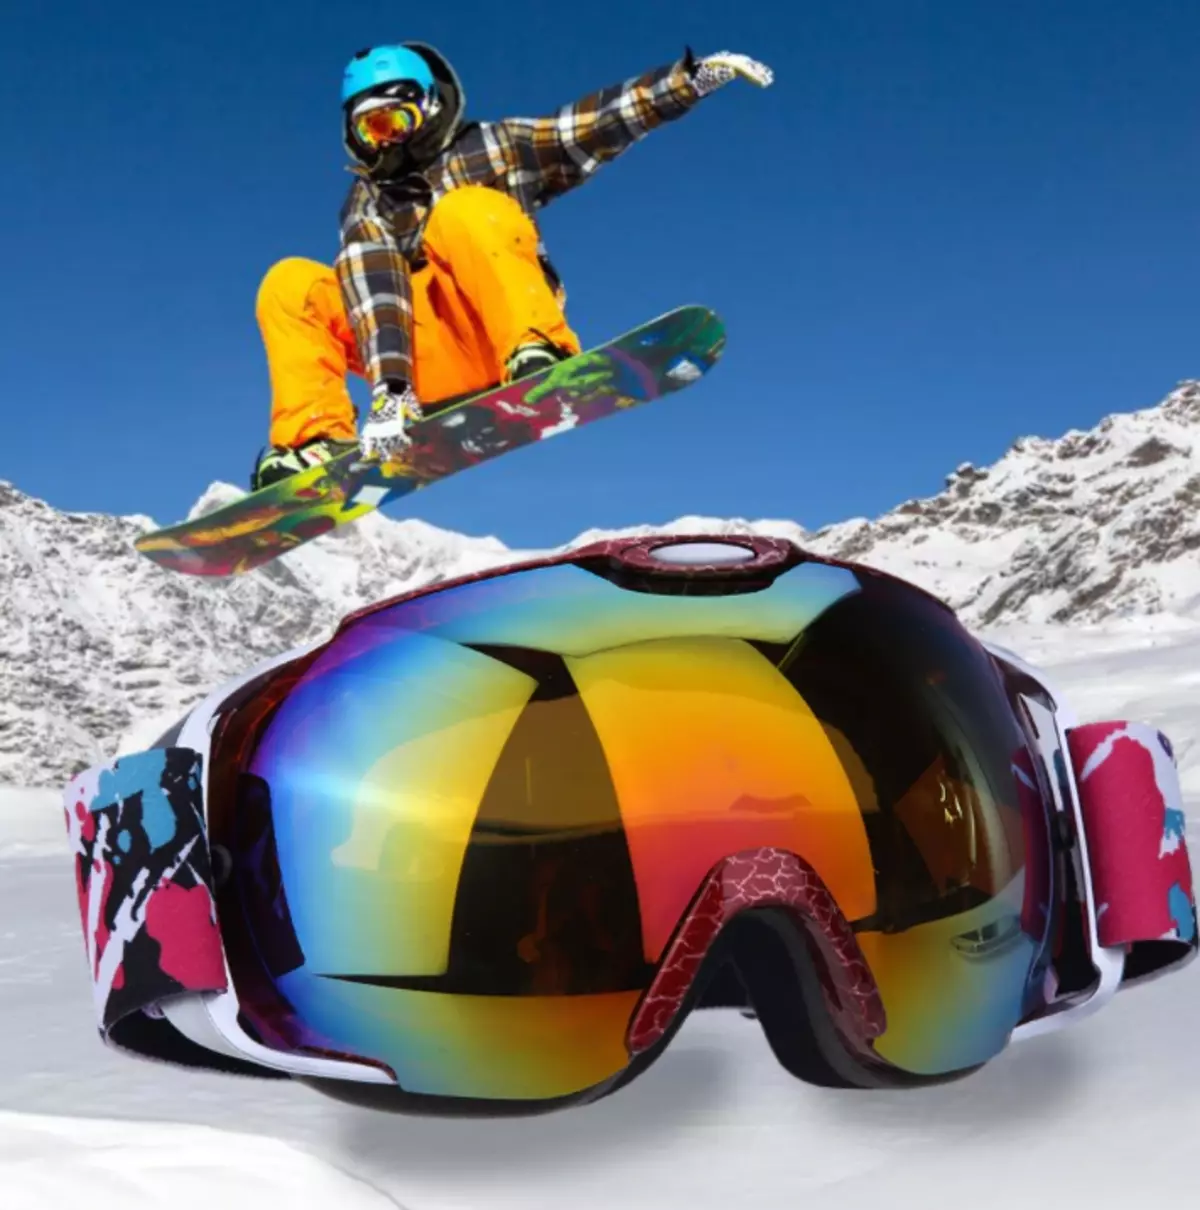 Snowboard Betaurrekoak: Nola aukeratu eskiatzeko maskara betaurrekoak? Puntu onenak Dioptias, Roxy eta Snowboarder beste eredu batzuekin 20291_36